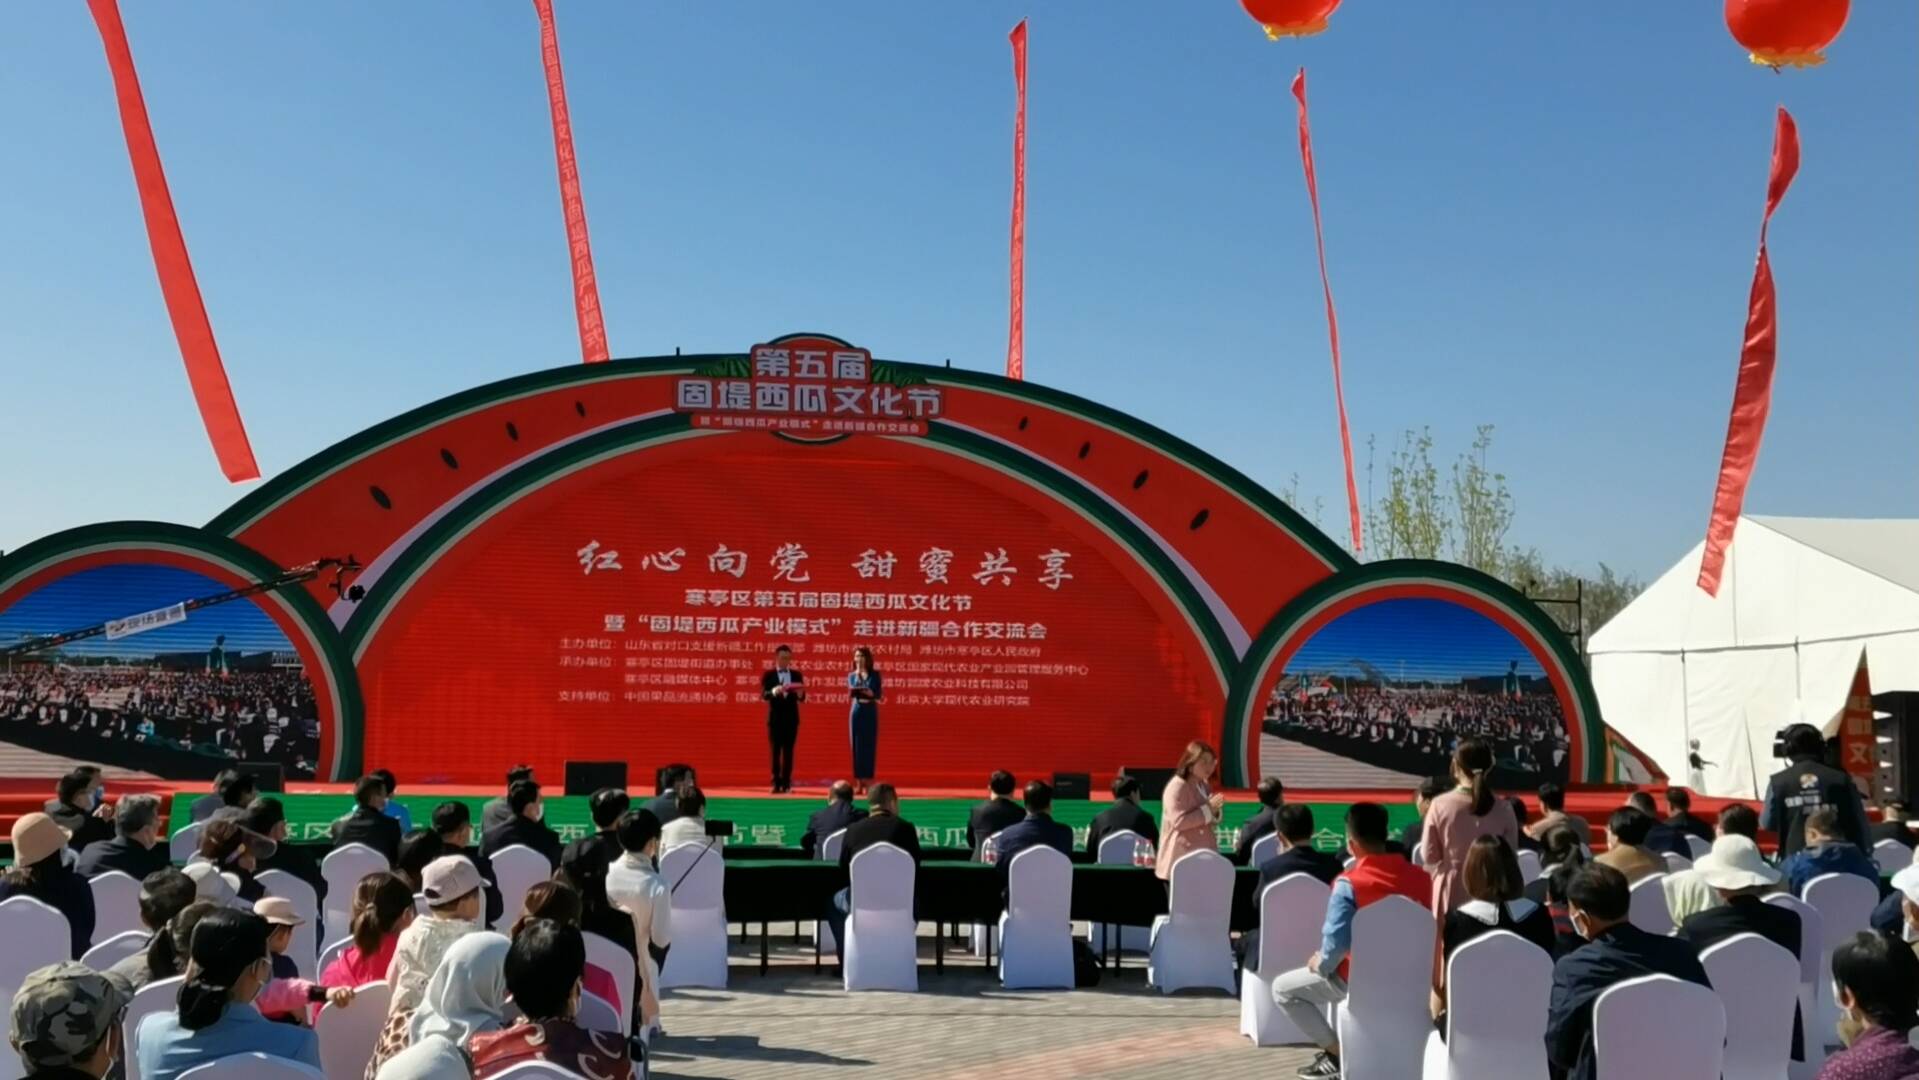 “固堤西瓜产业模式”走进新疆 第五届固堤西瓜文化节开幕